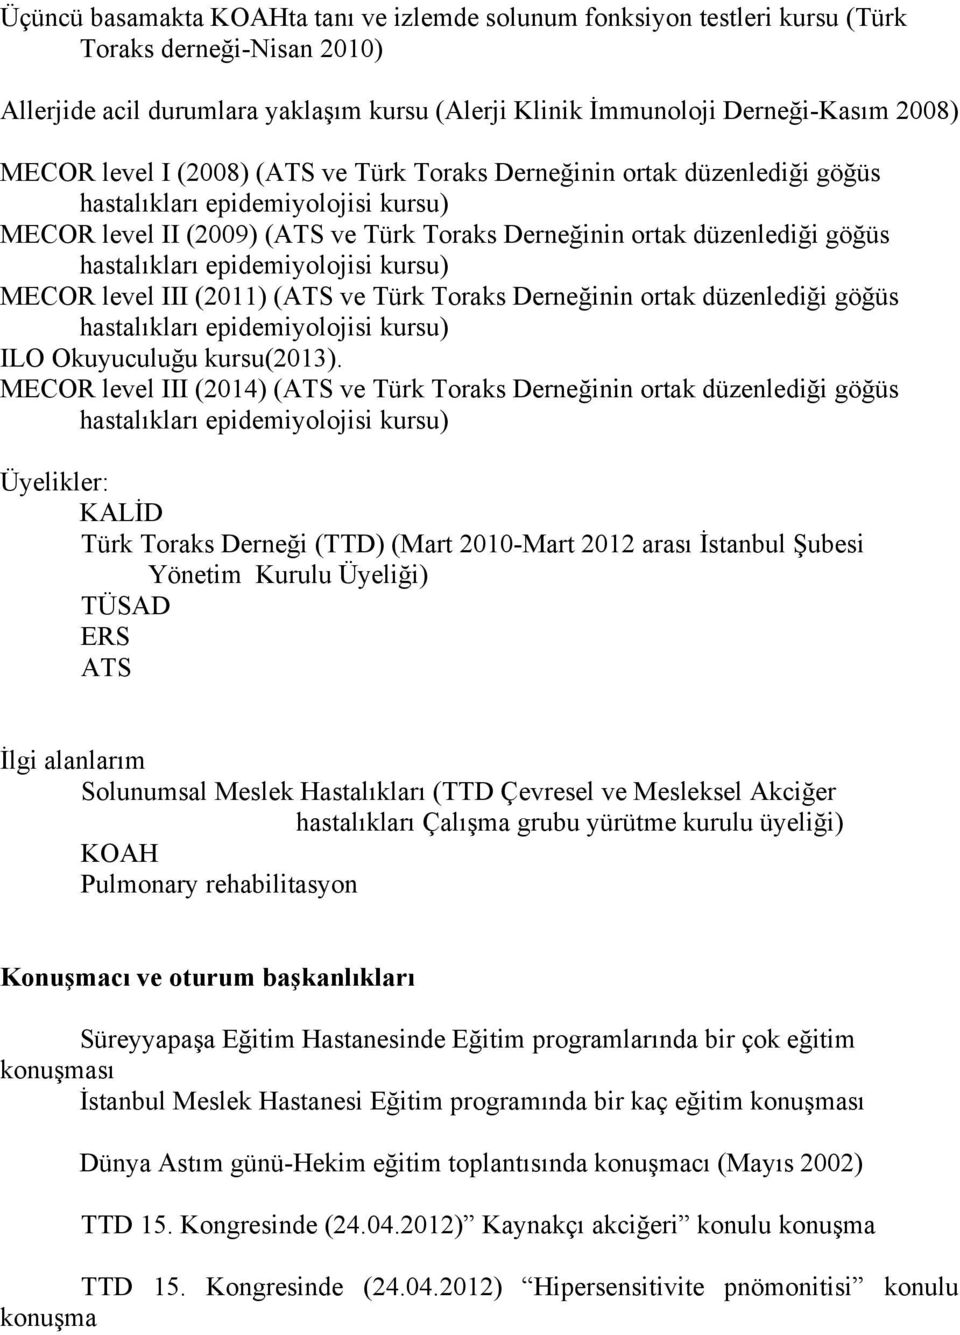 epidemiyolojisi kursu) MECOR level III (2011) (ATS ve Türk Toraks Derneğinin ortak düzenlediği göğüs hastalıkları epidemiyolojisi kursu) ILO Okuyuculuğu kursu(2013).